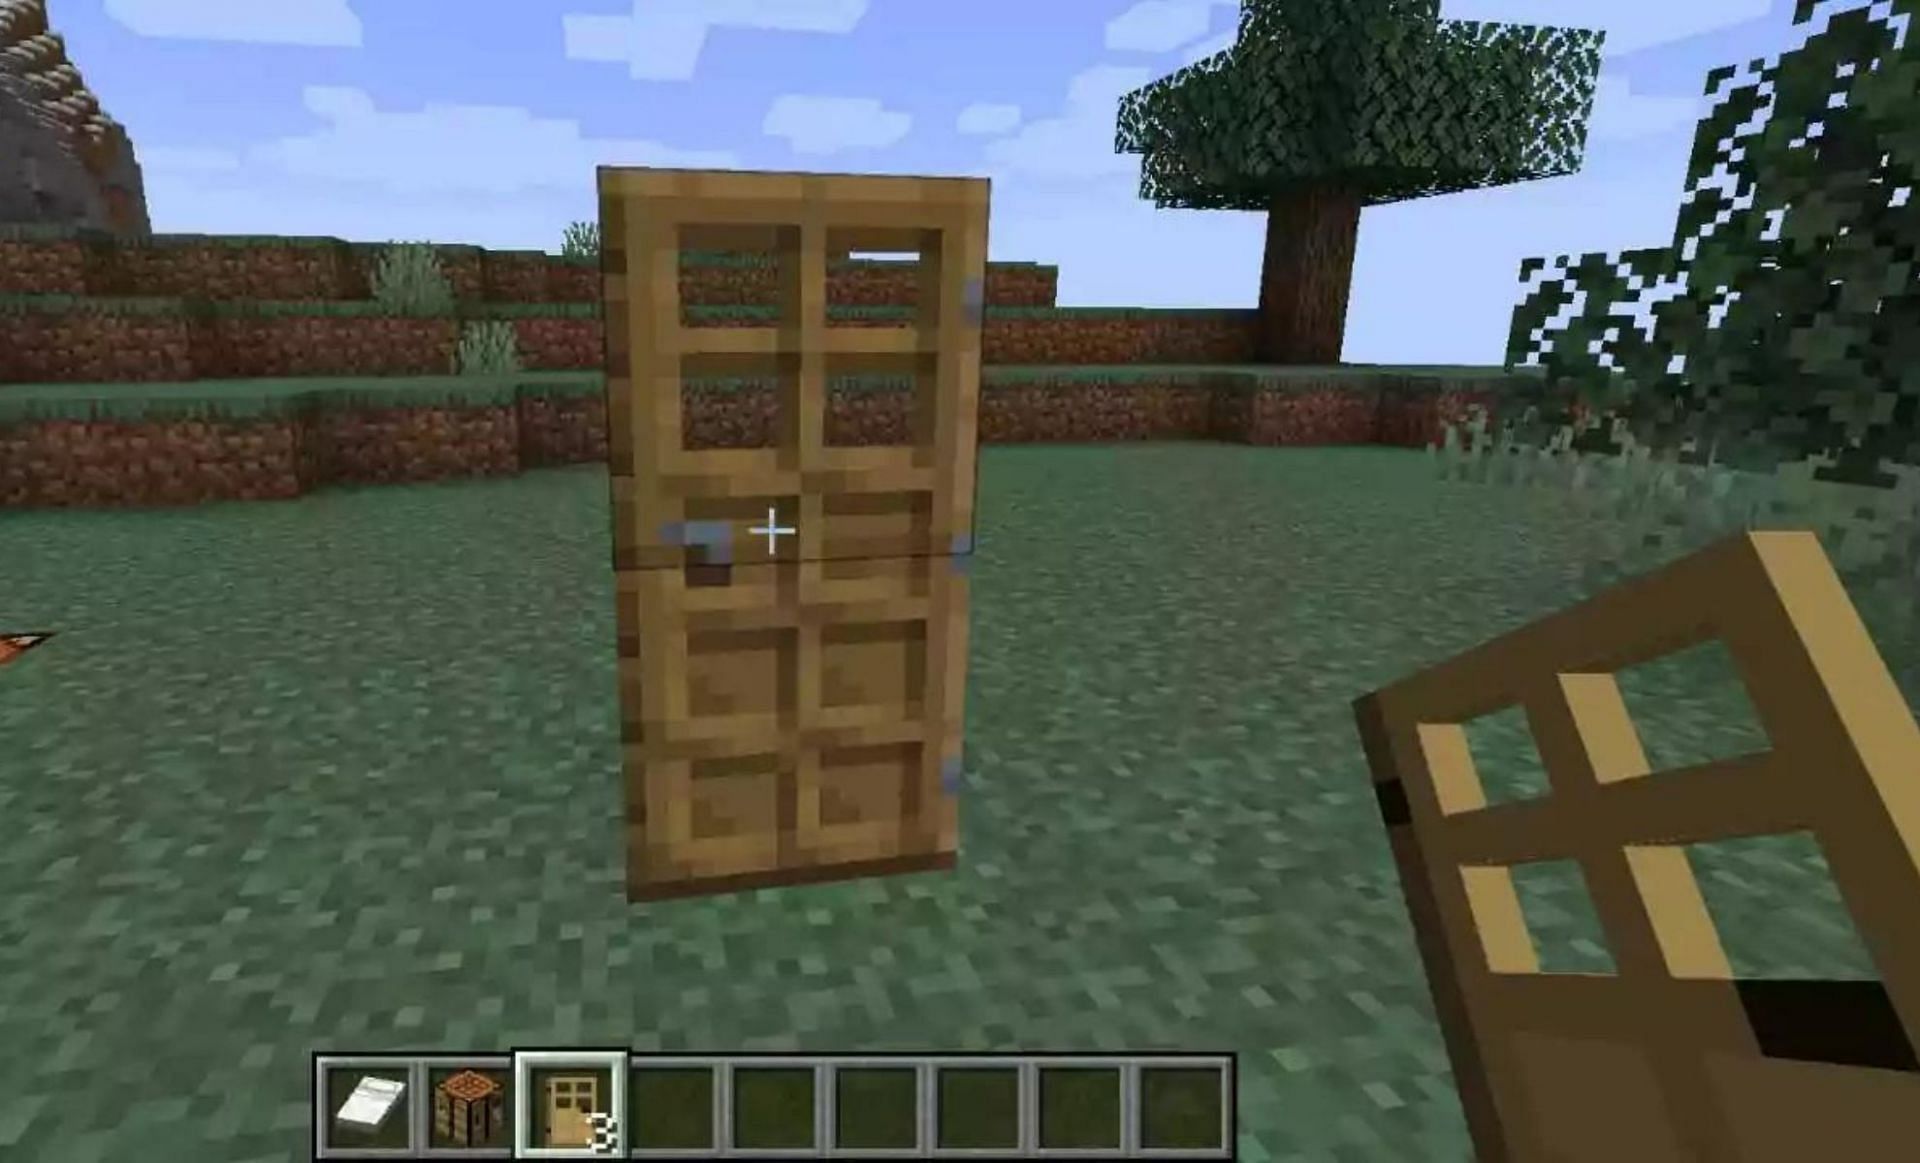 An oak door in Minecraft (Image via Mojang)